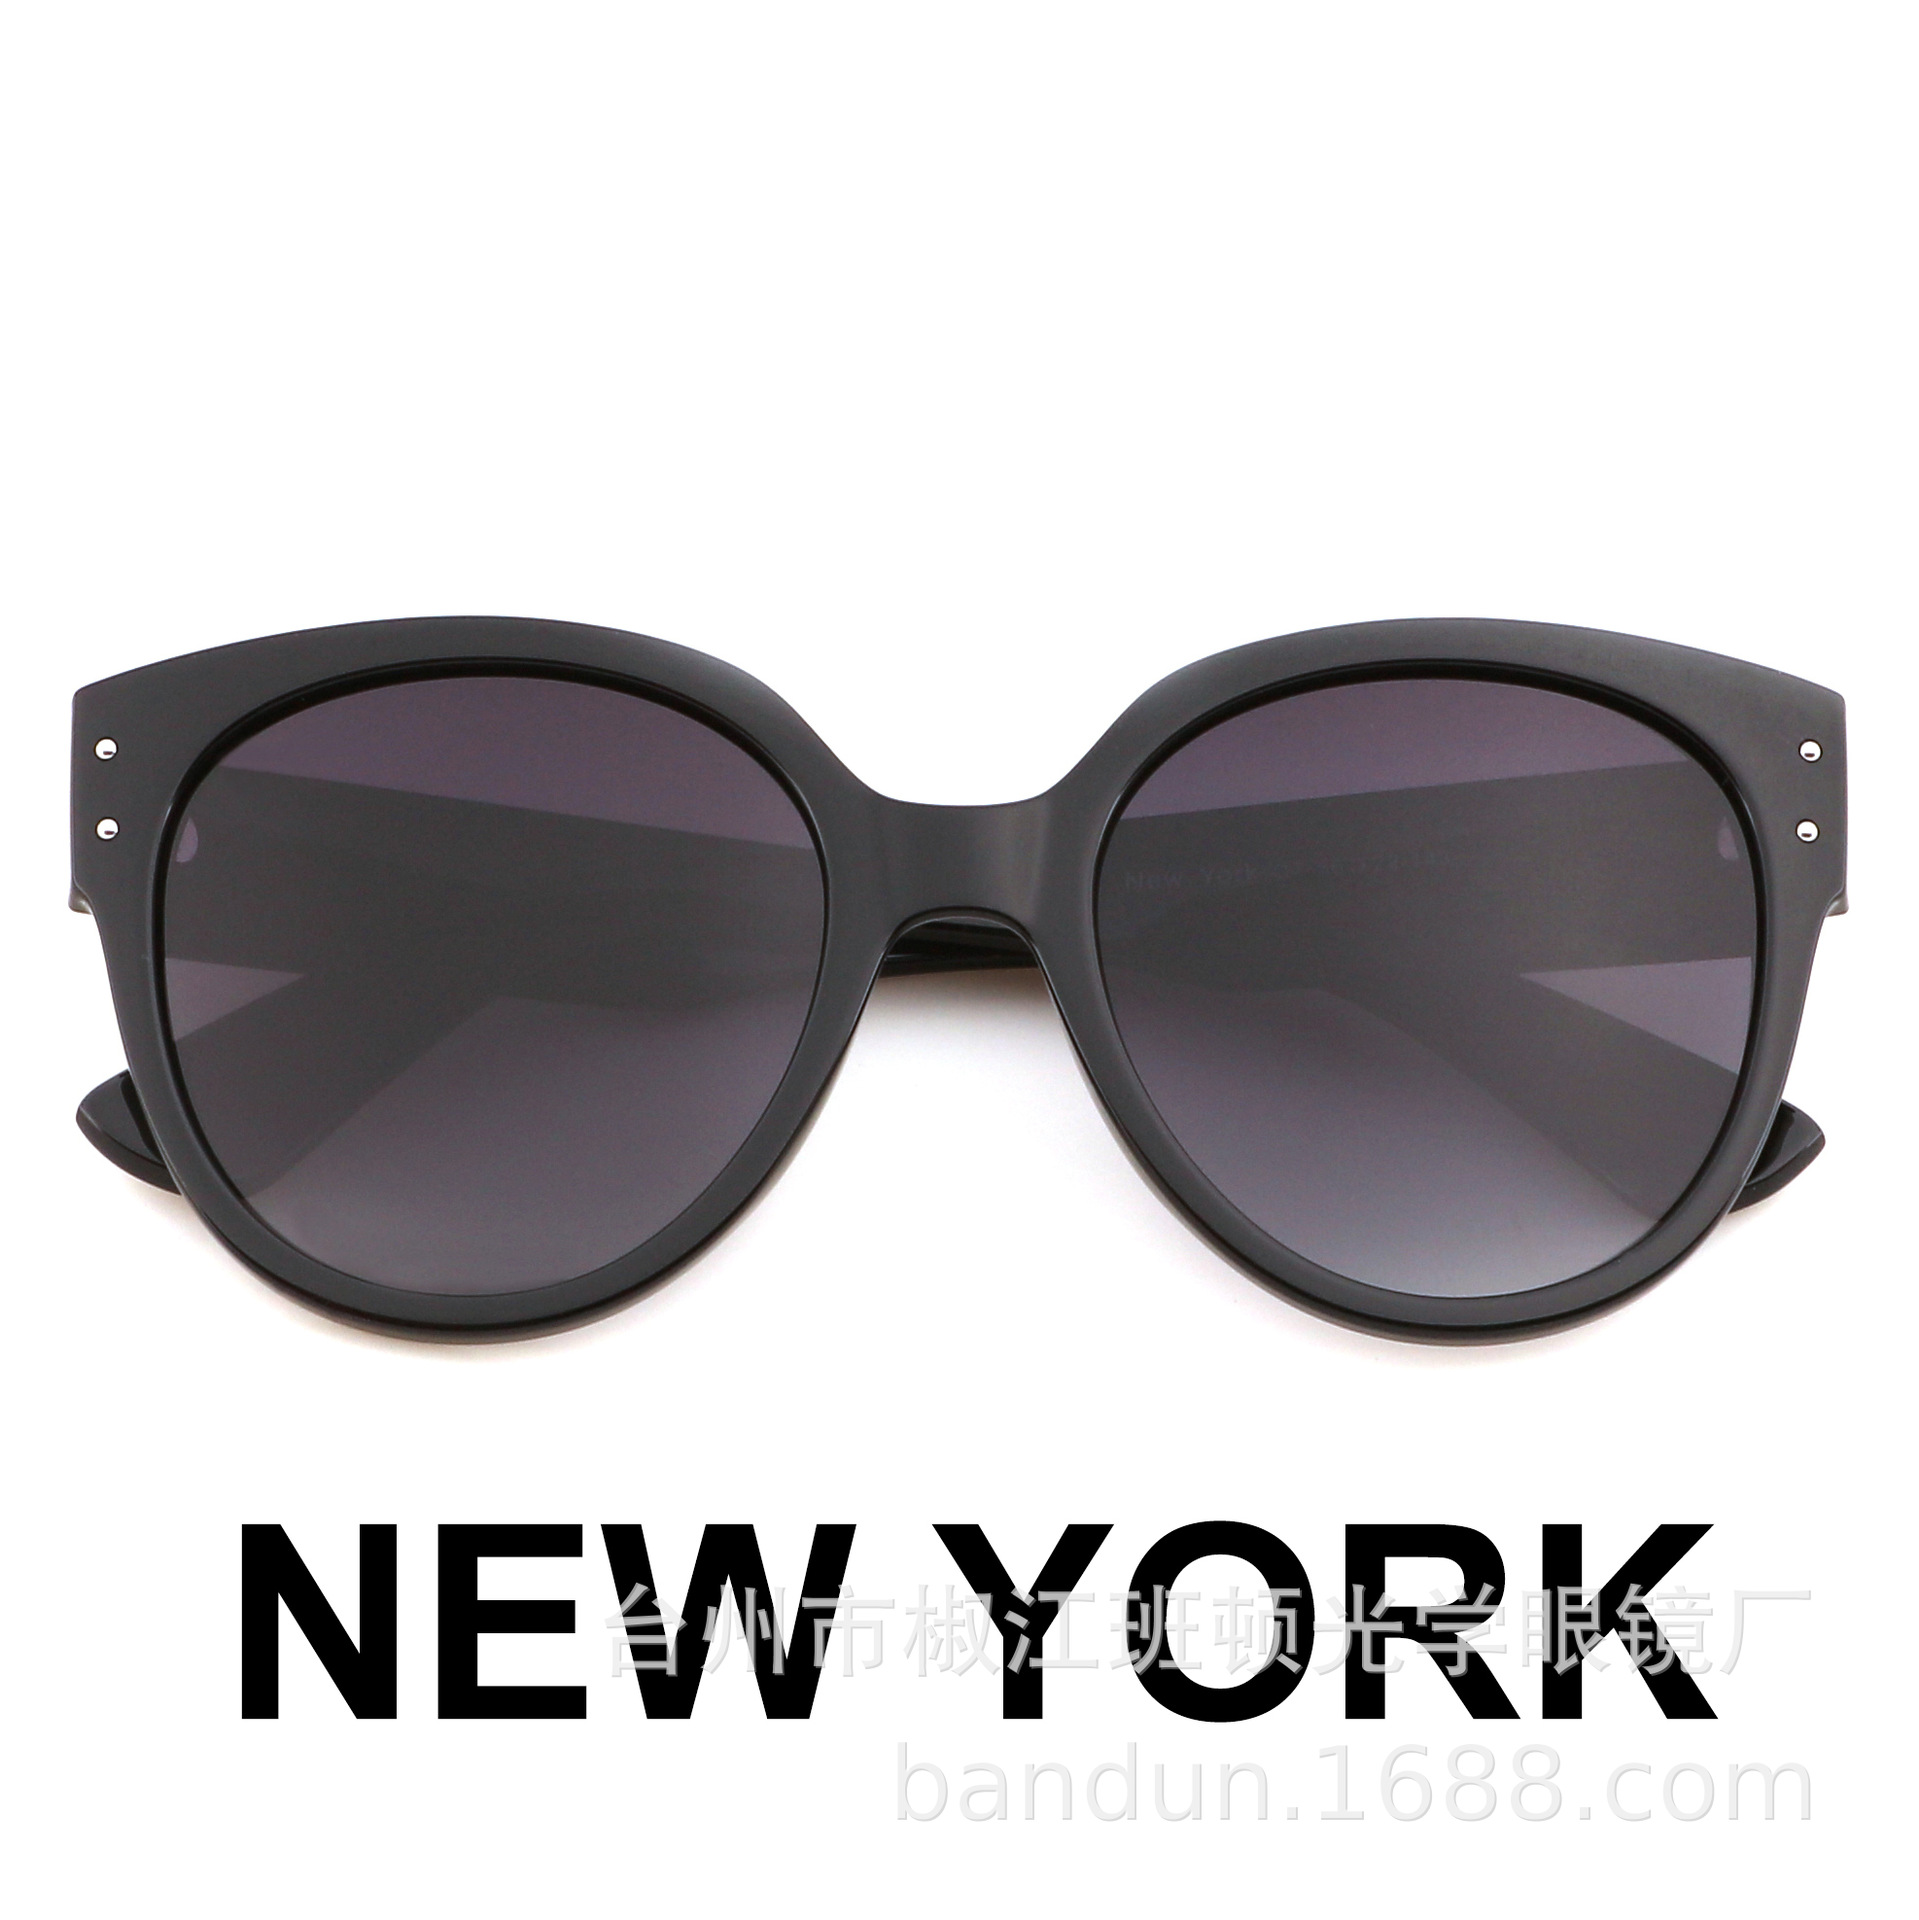 新款New York女款偏光太阳镜TR眼镜沙滩墨镜工厂批发